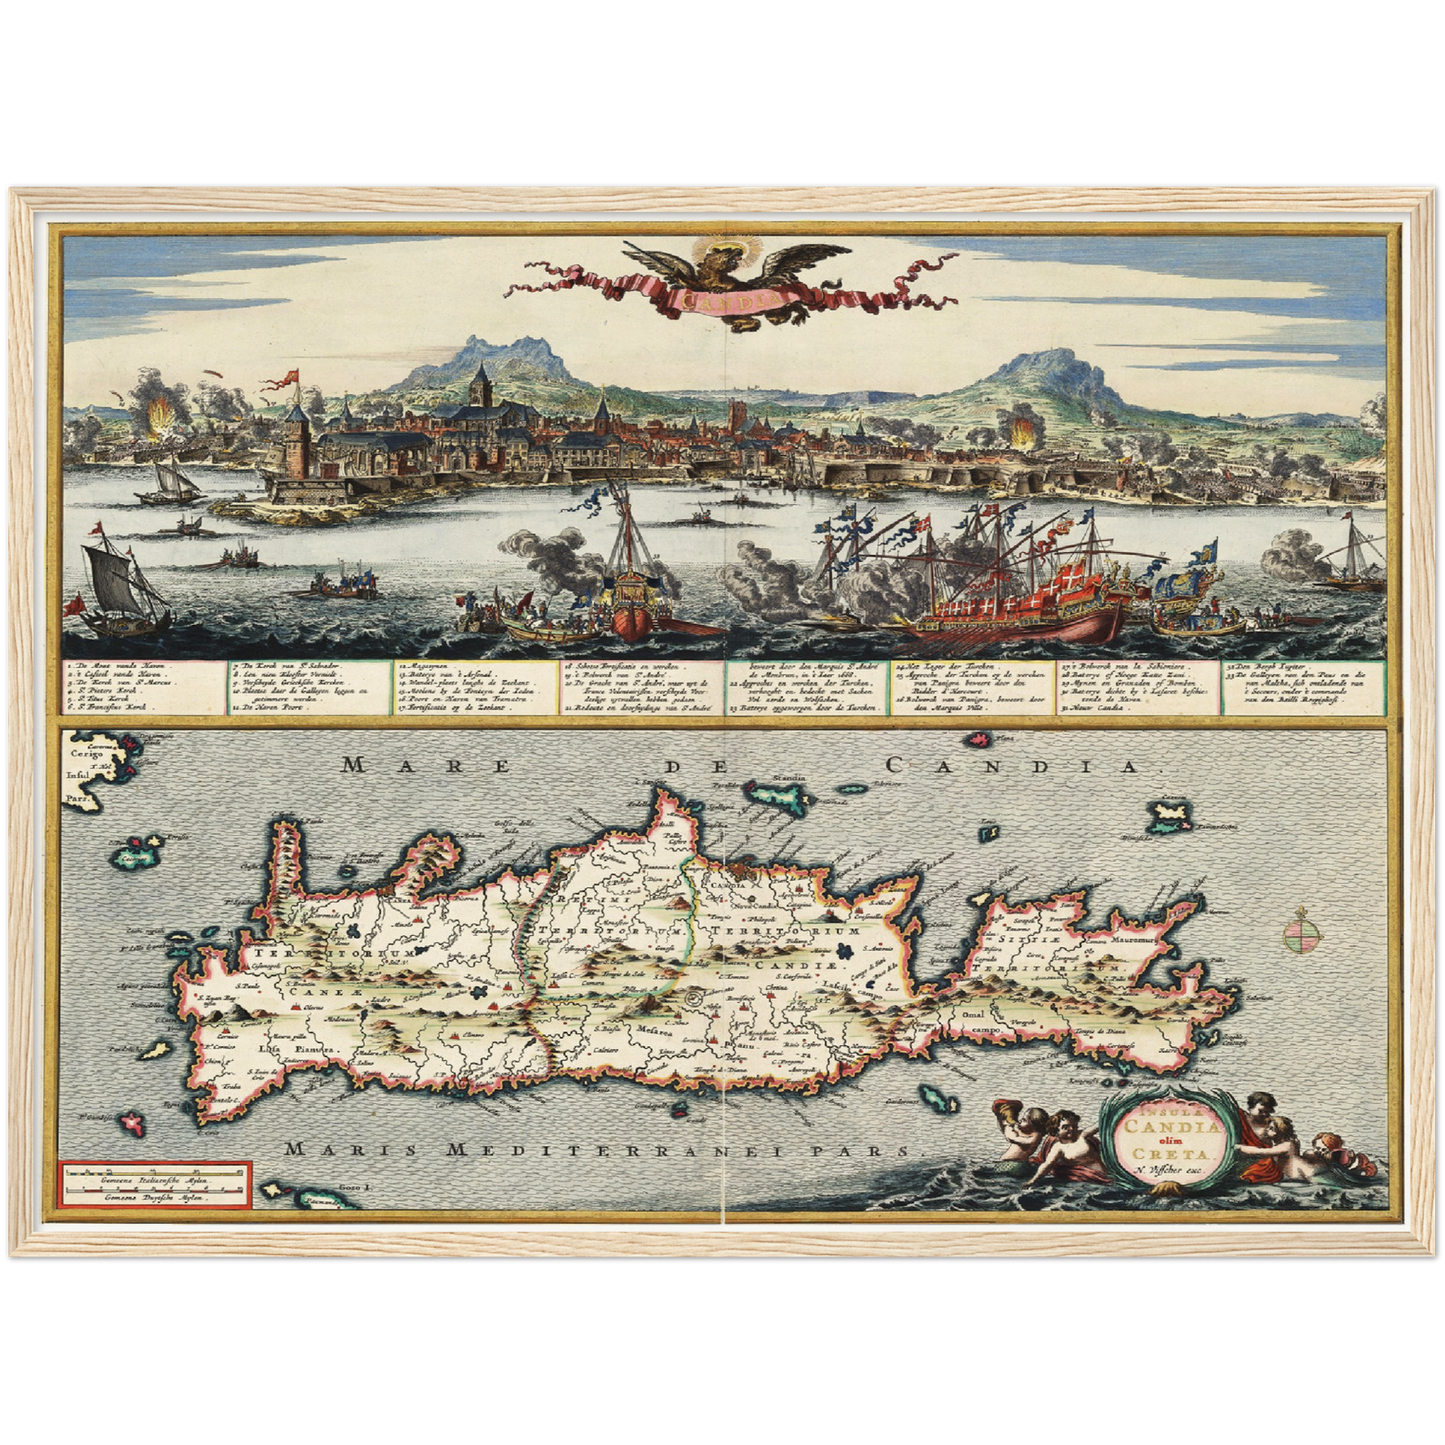 Historische Landkarte Kreta um 1668